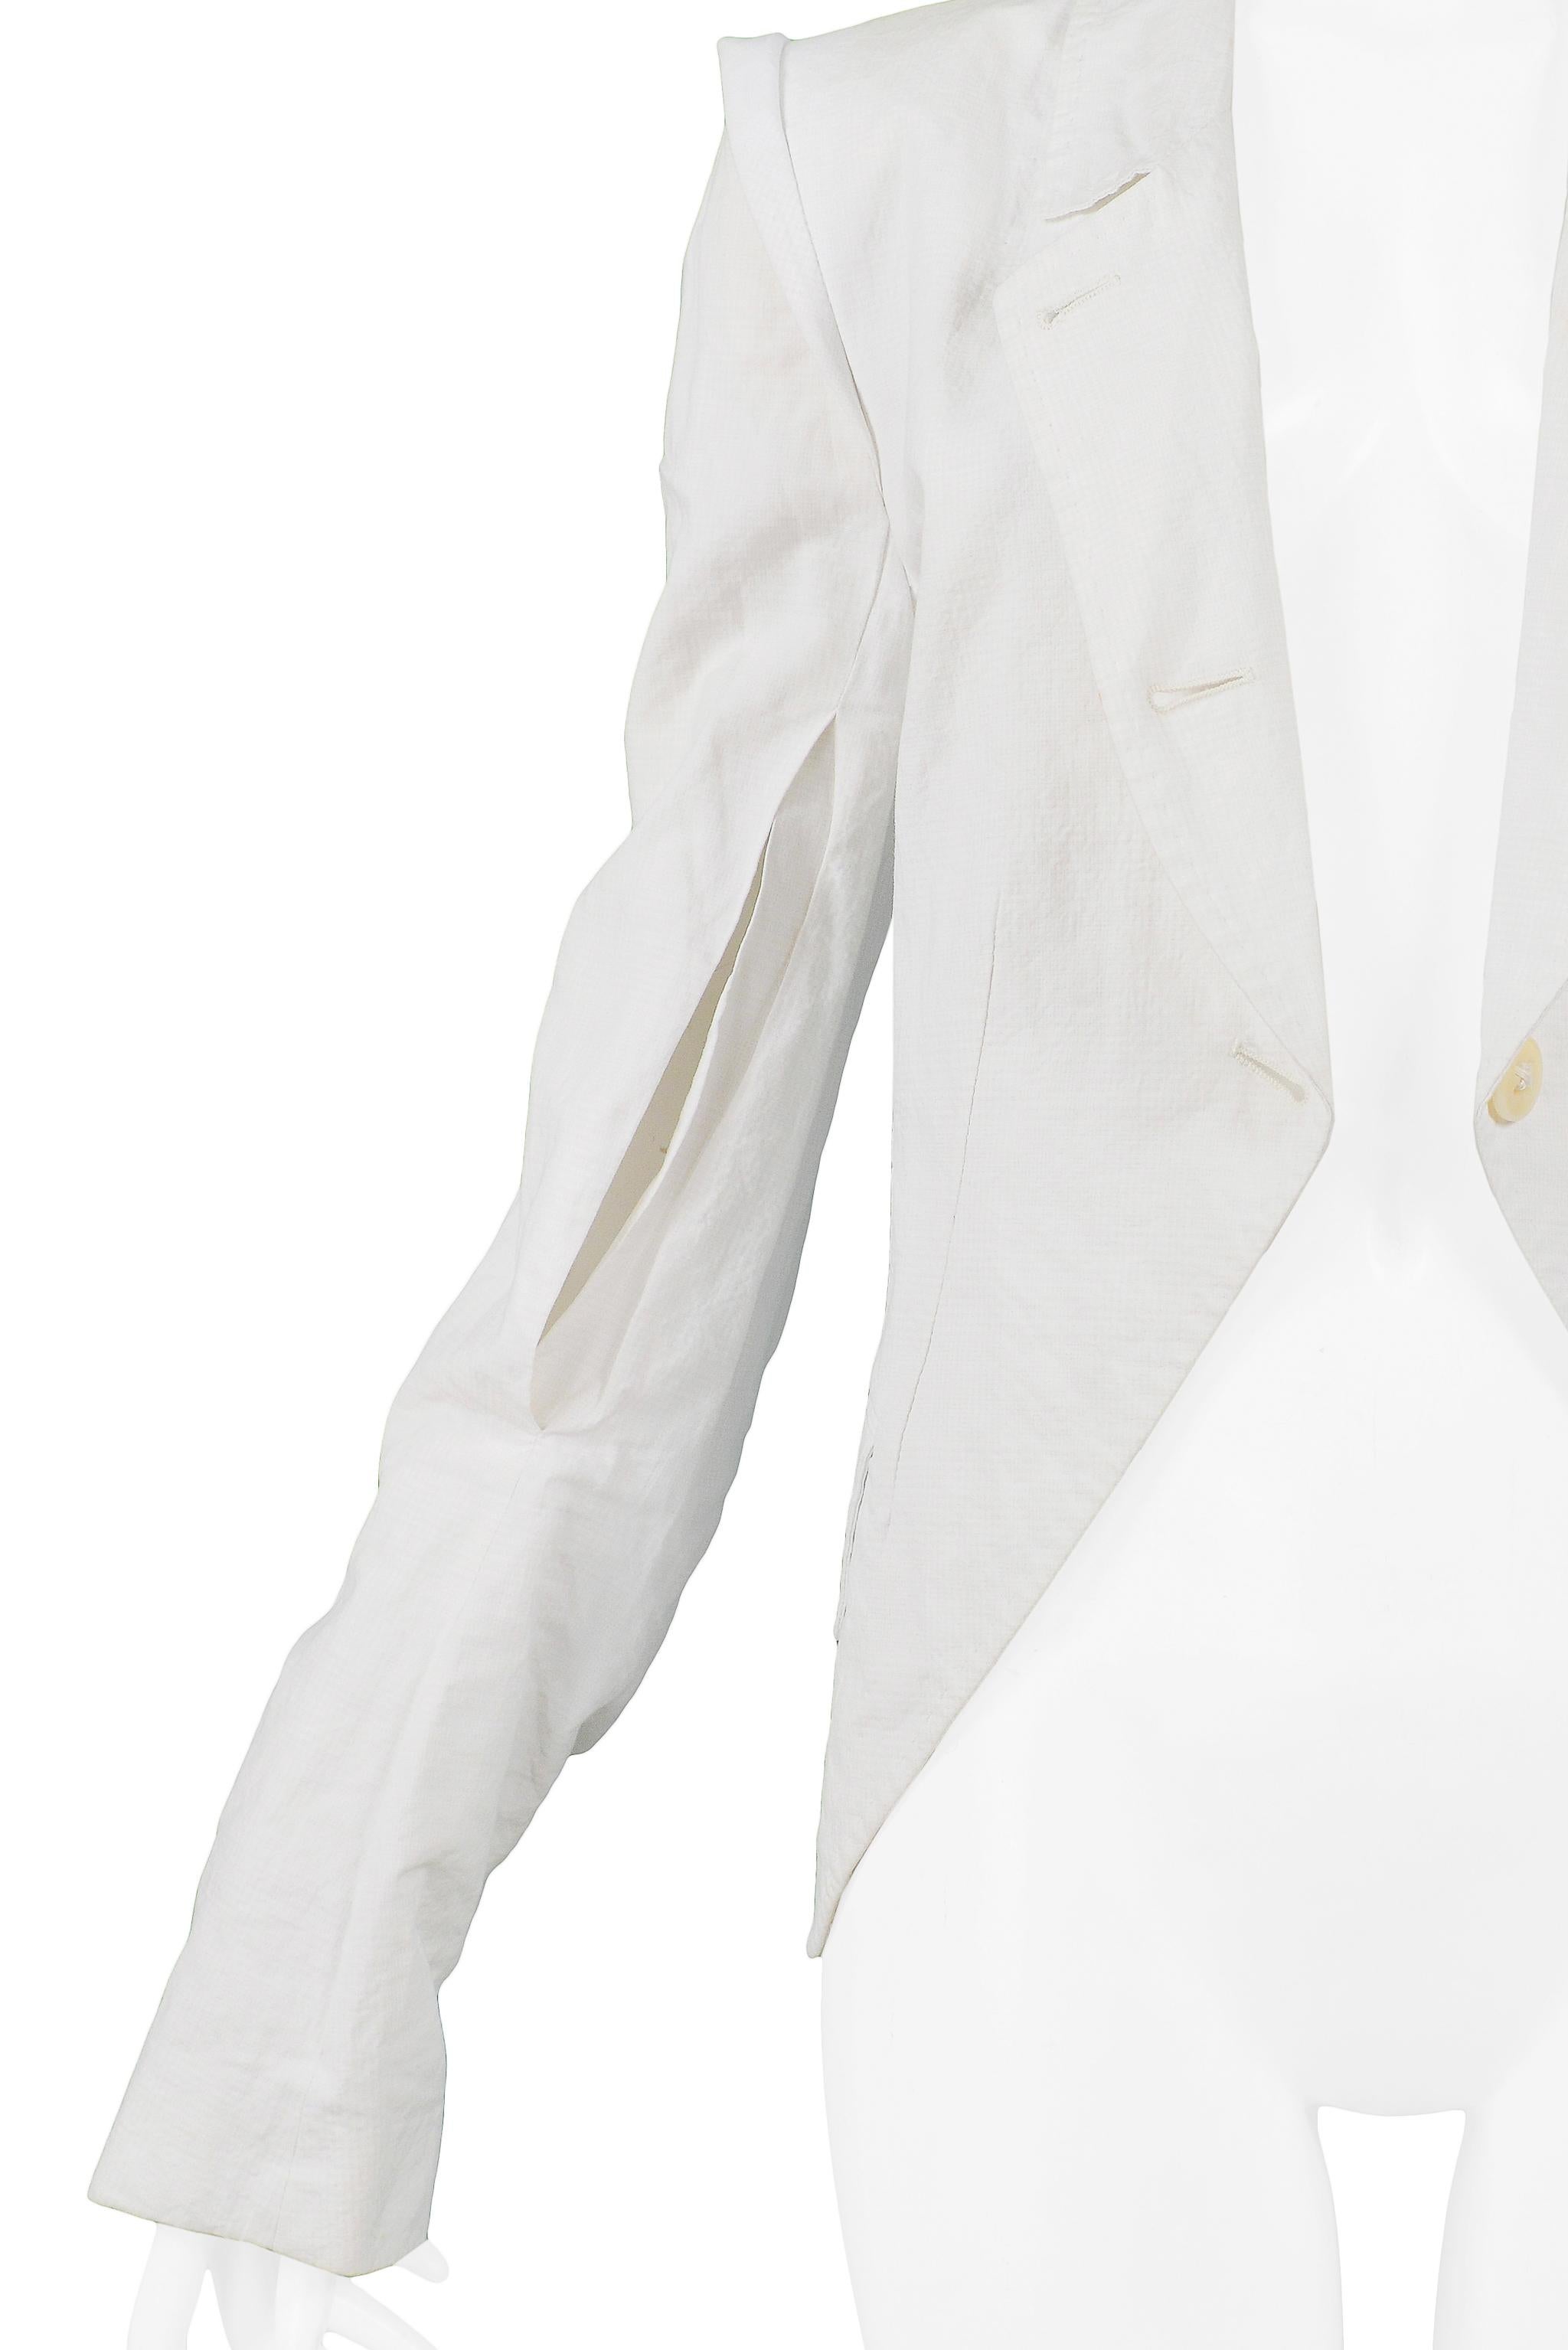 Women's Ann Demeulemeester White Cotton Slit Sleeve Jacket For Sale